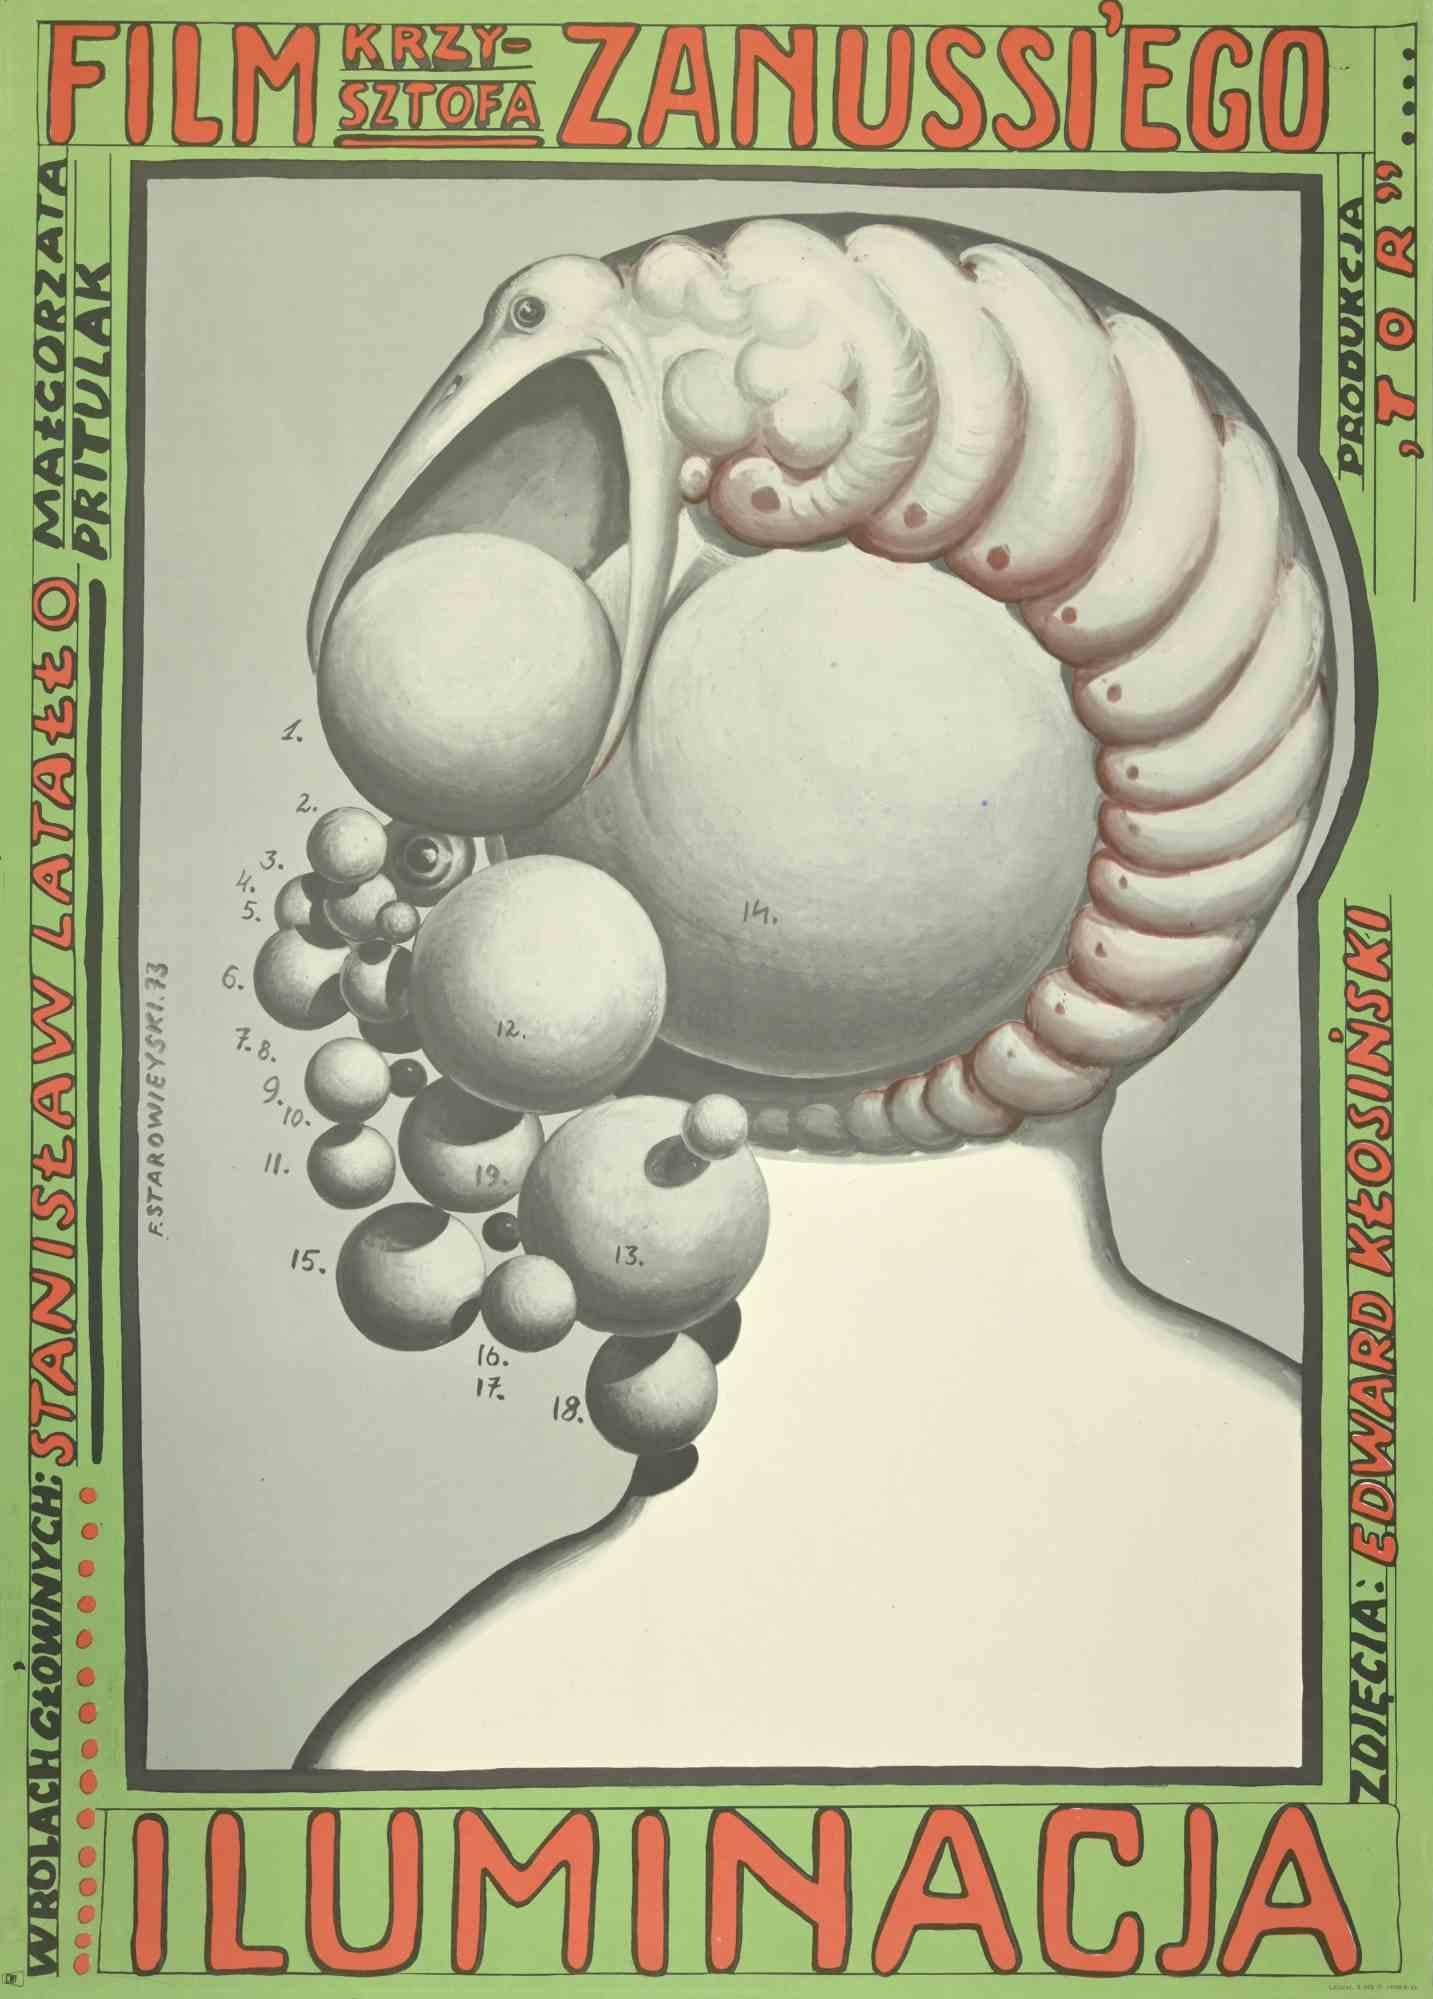 Unknown Abstract Print - Vintage Poster Iluminacia - Zanussi Ego - Original offset - 1973